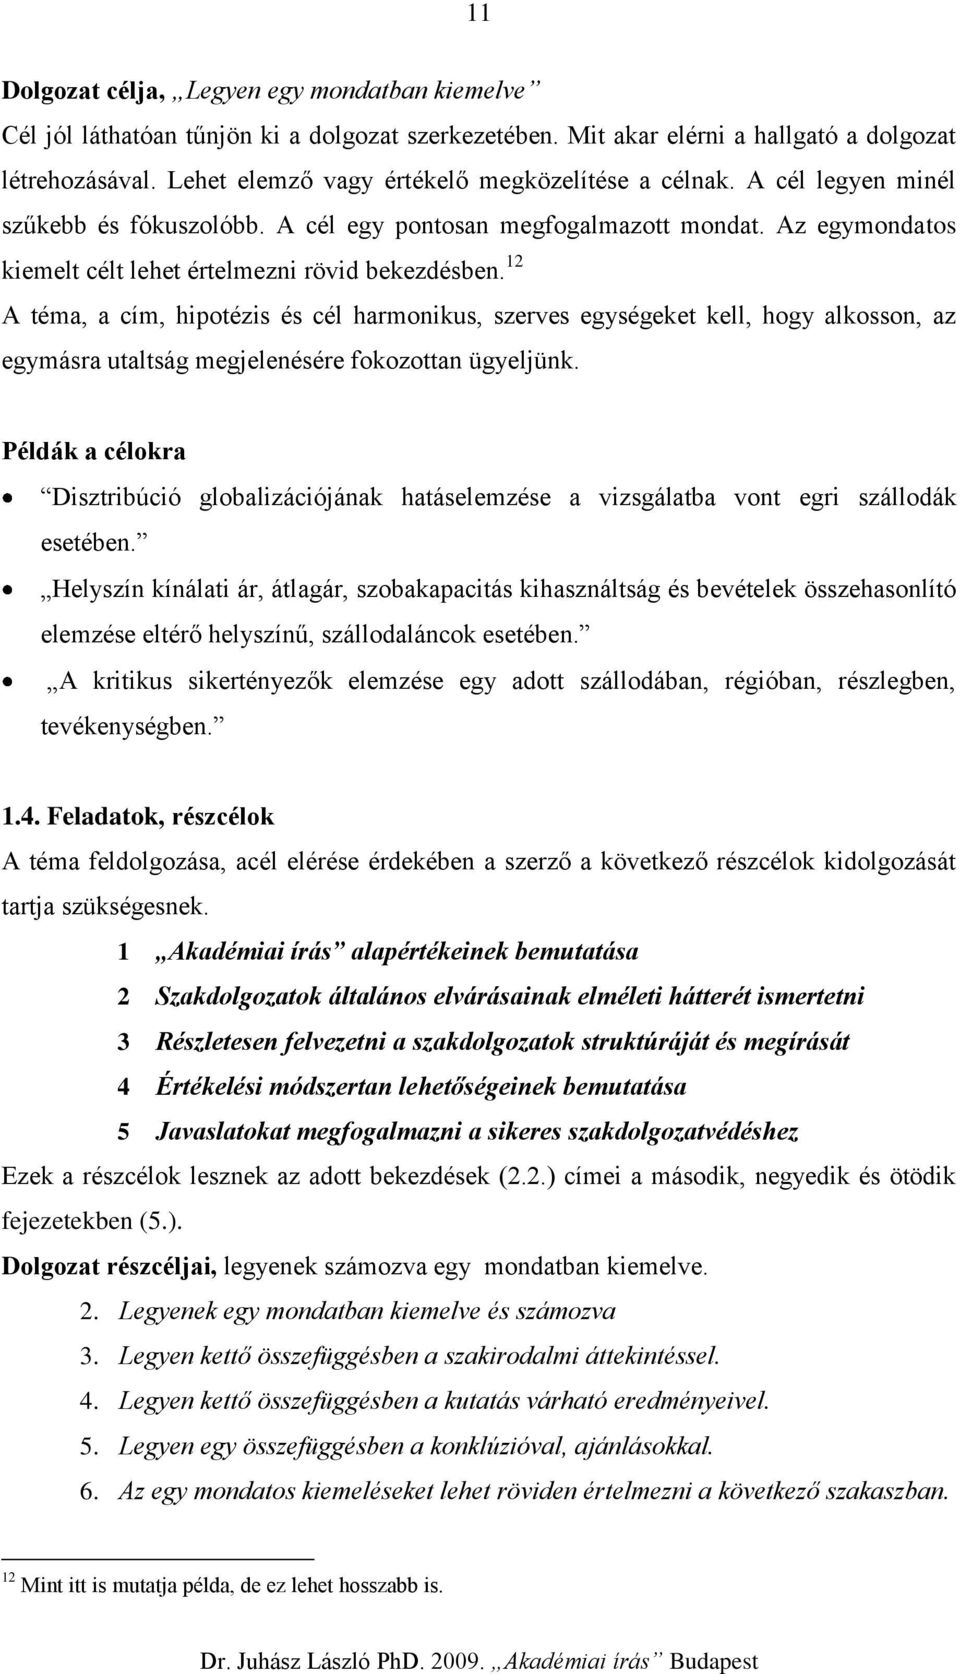 Akadémiai írás. Dr. Juhász László Ph.D Dr. Juhász László PhD Akadémiai írás  Budapest - PDF Ingyenes letöltés